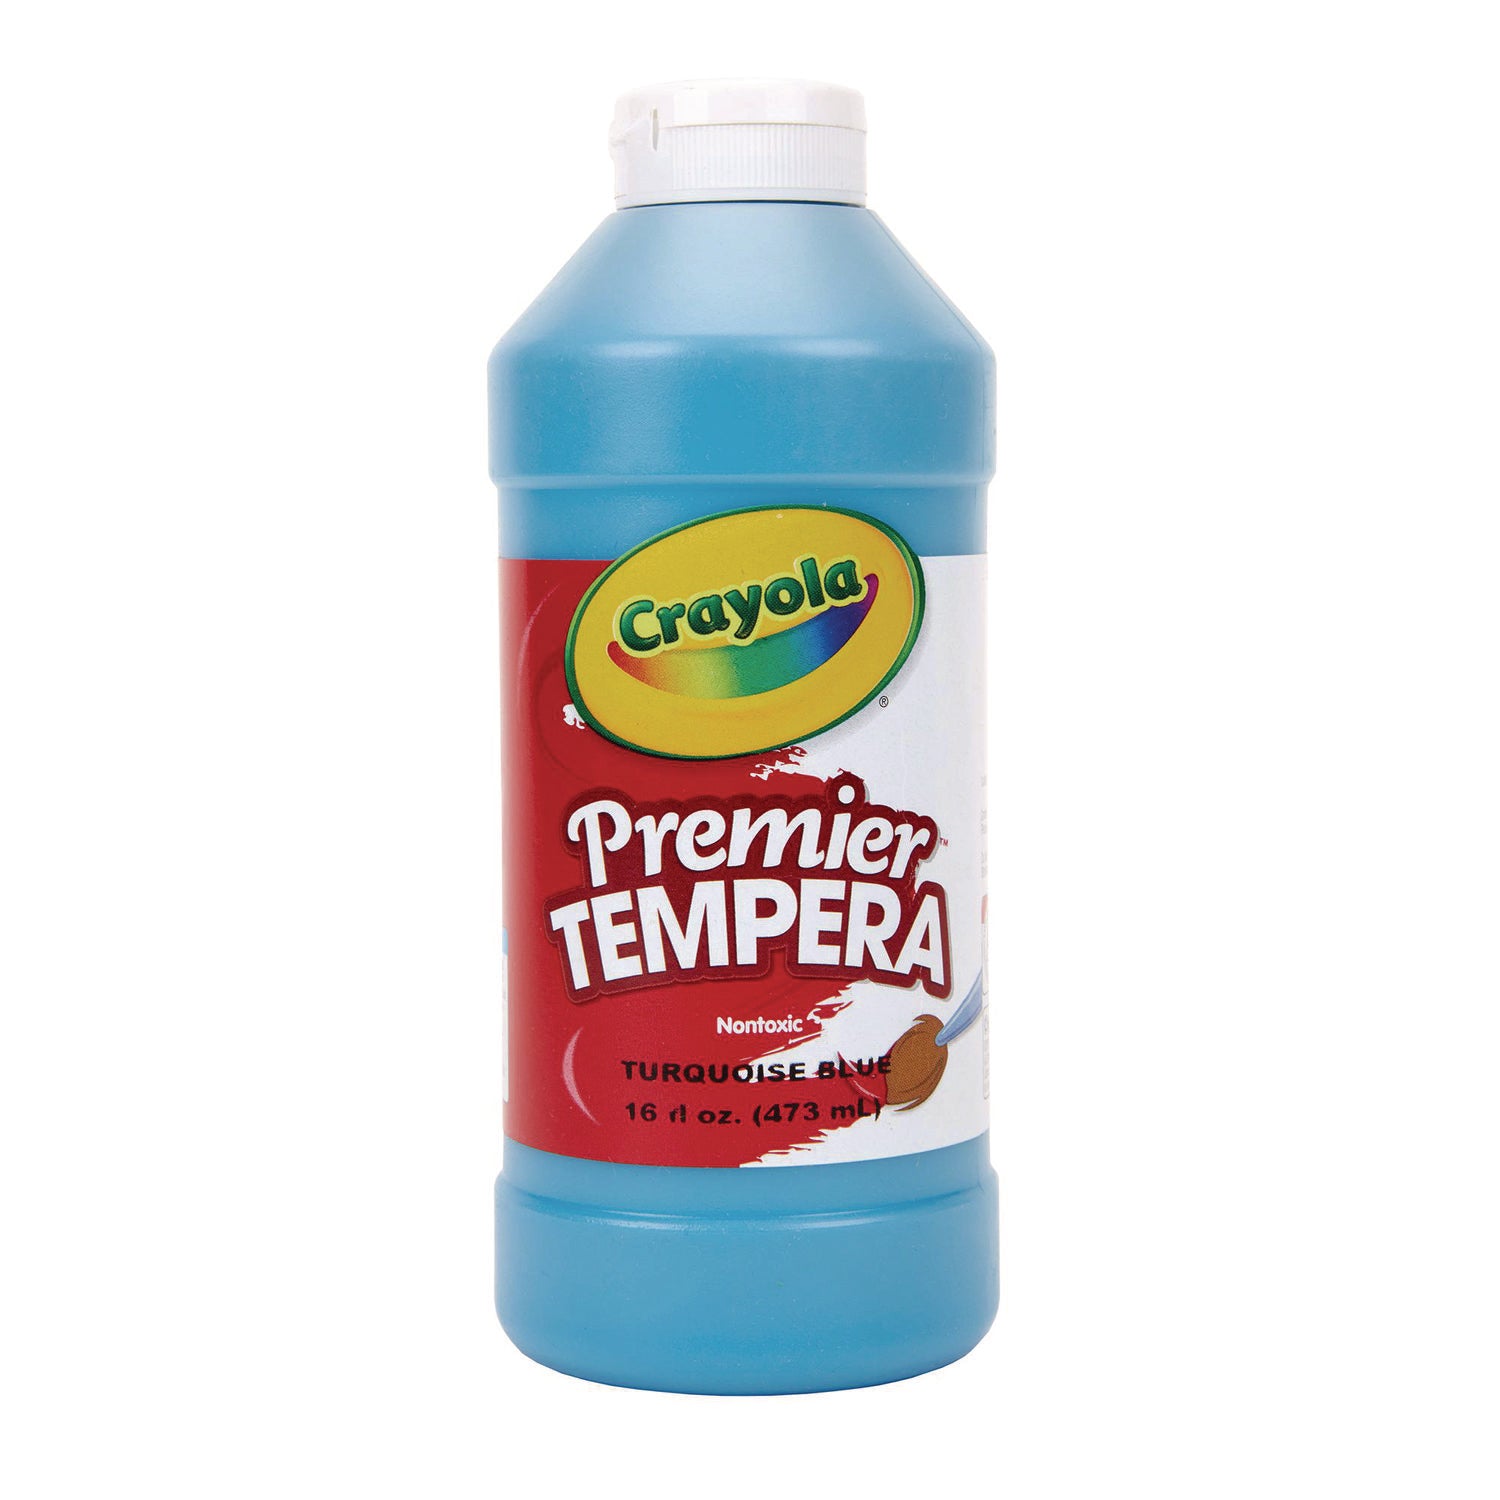 Premier Tempera Paint, Turquoise, 16 oz Bottle - 1